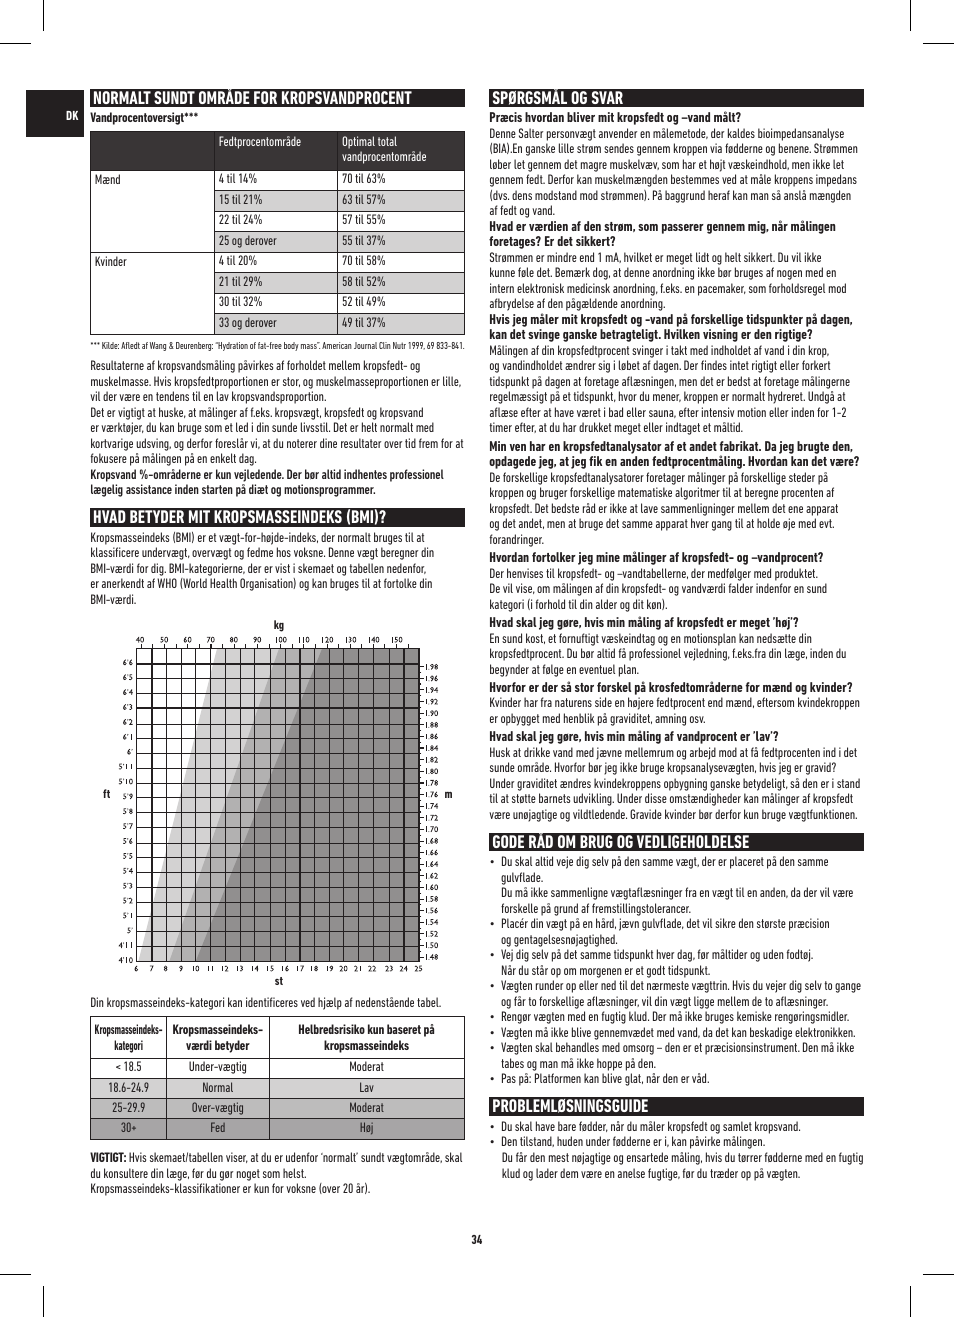 Normalt sundt område for kropsvandprocent, Hvad betyder mit kropsmasseindeks (bmi), Spørgsmål og svar | Gode råd om brug og vedligeholdelse, Problemløsningsguide | Salter 9141 WH3R UST Glass Analyser Scale User Manual | Page 34 / 60